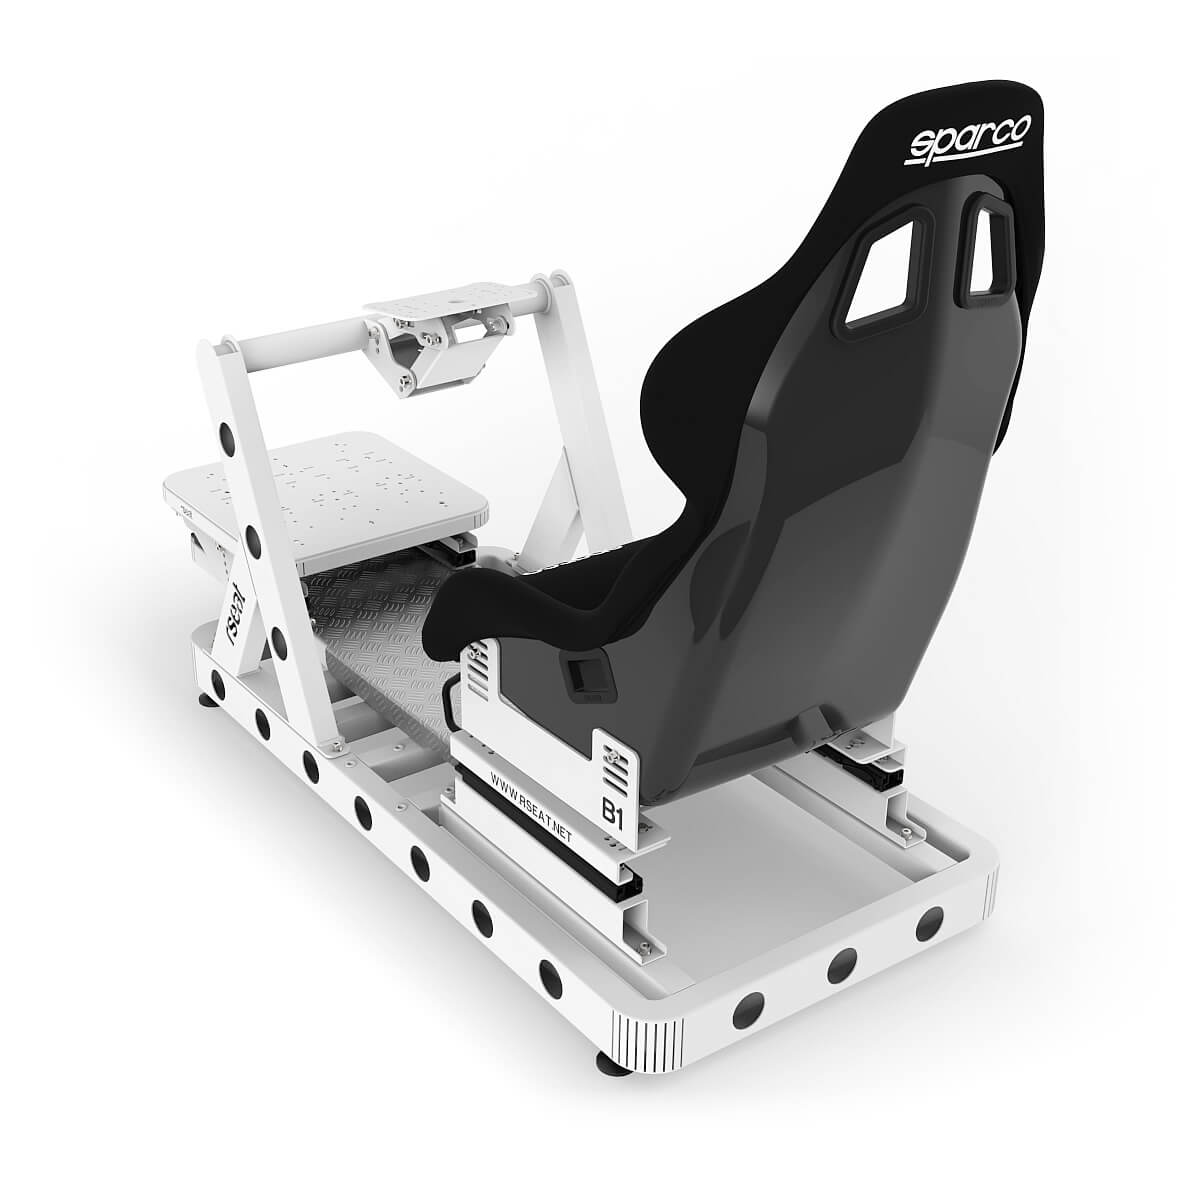 RSeat Europe Sparco Simulatoren B1 Black Frame with Black Seat - B1 Black  Frame with Black Seat